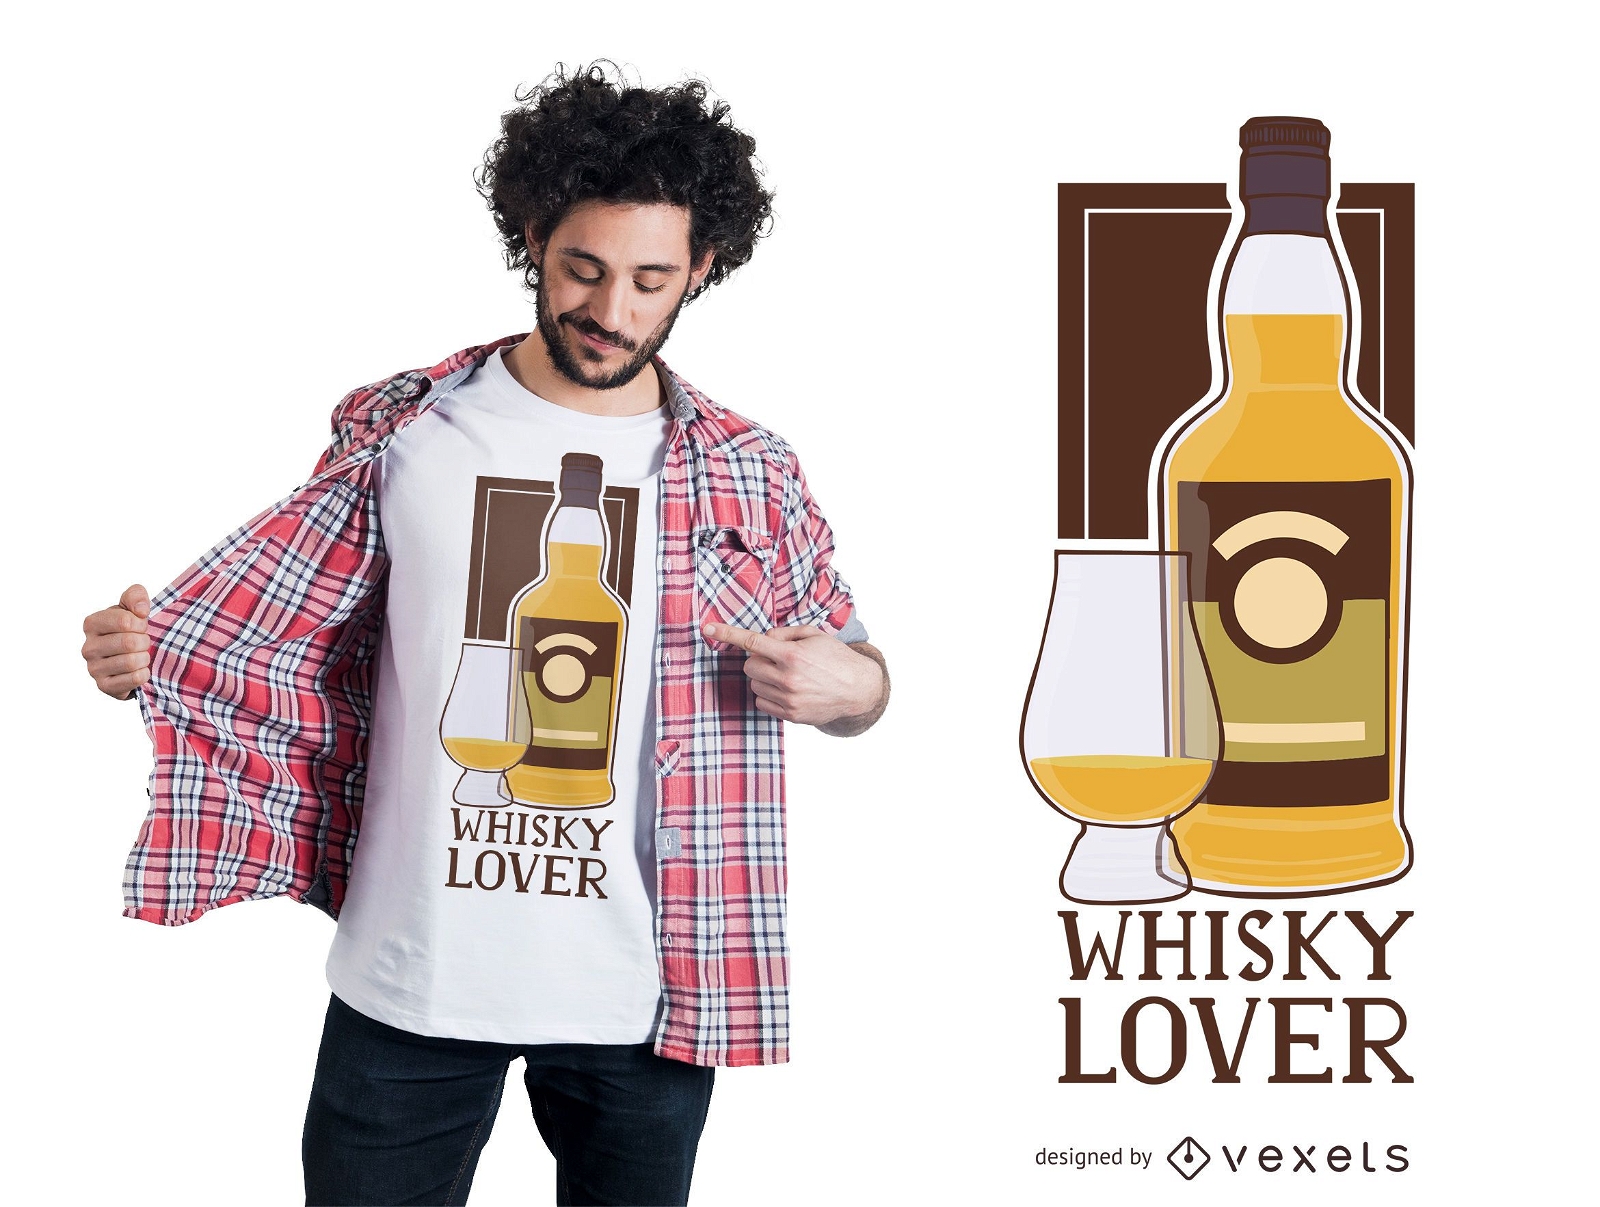 Whisky Lover T-shirt Design